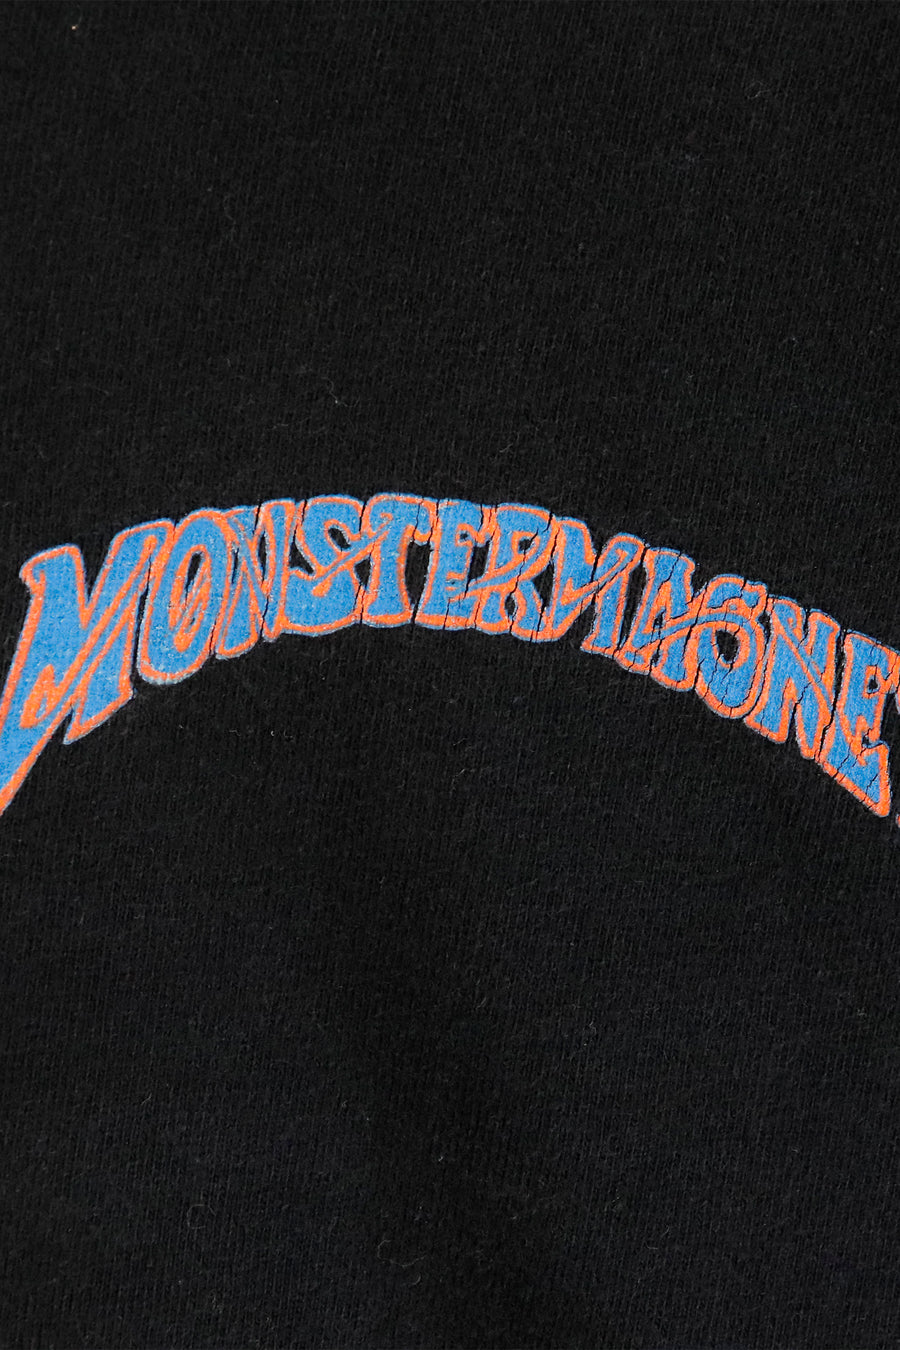 Vintage Monster Magnet Band T Shirt Sz L